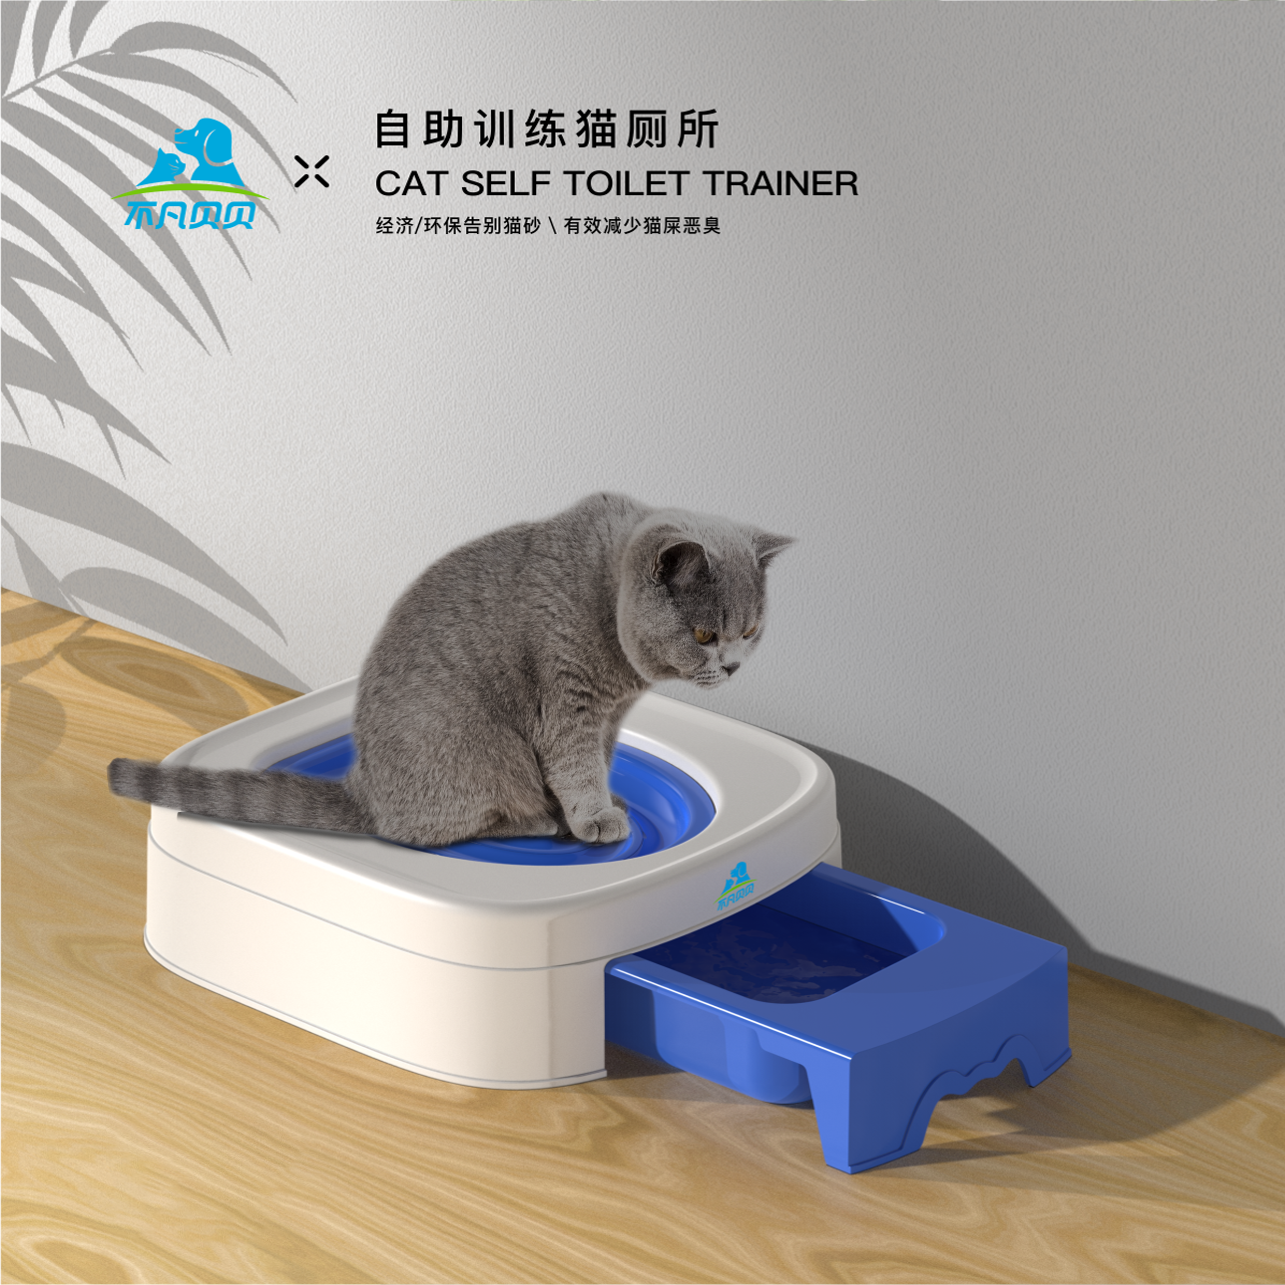 新款宠物用品猫便盘训练器猫马桶垫便盘垫可放猫沙盘便坐垫训练器